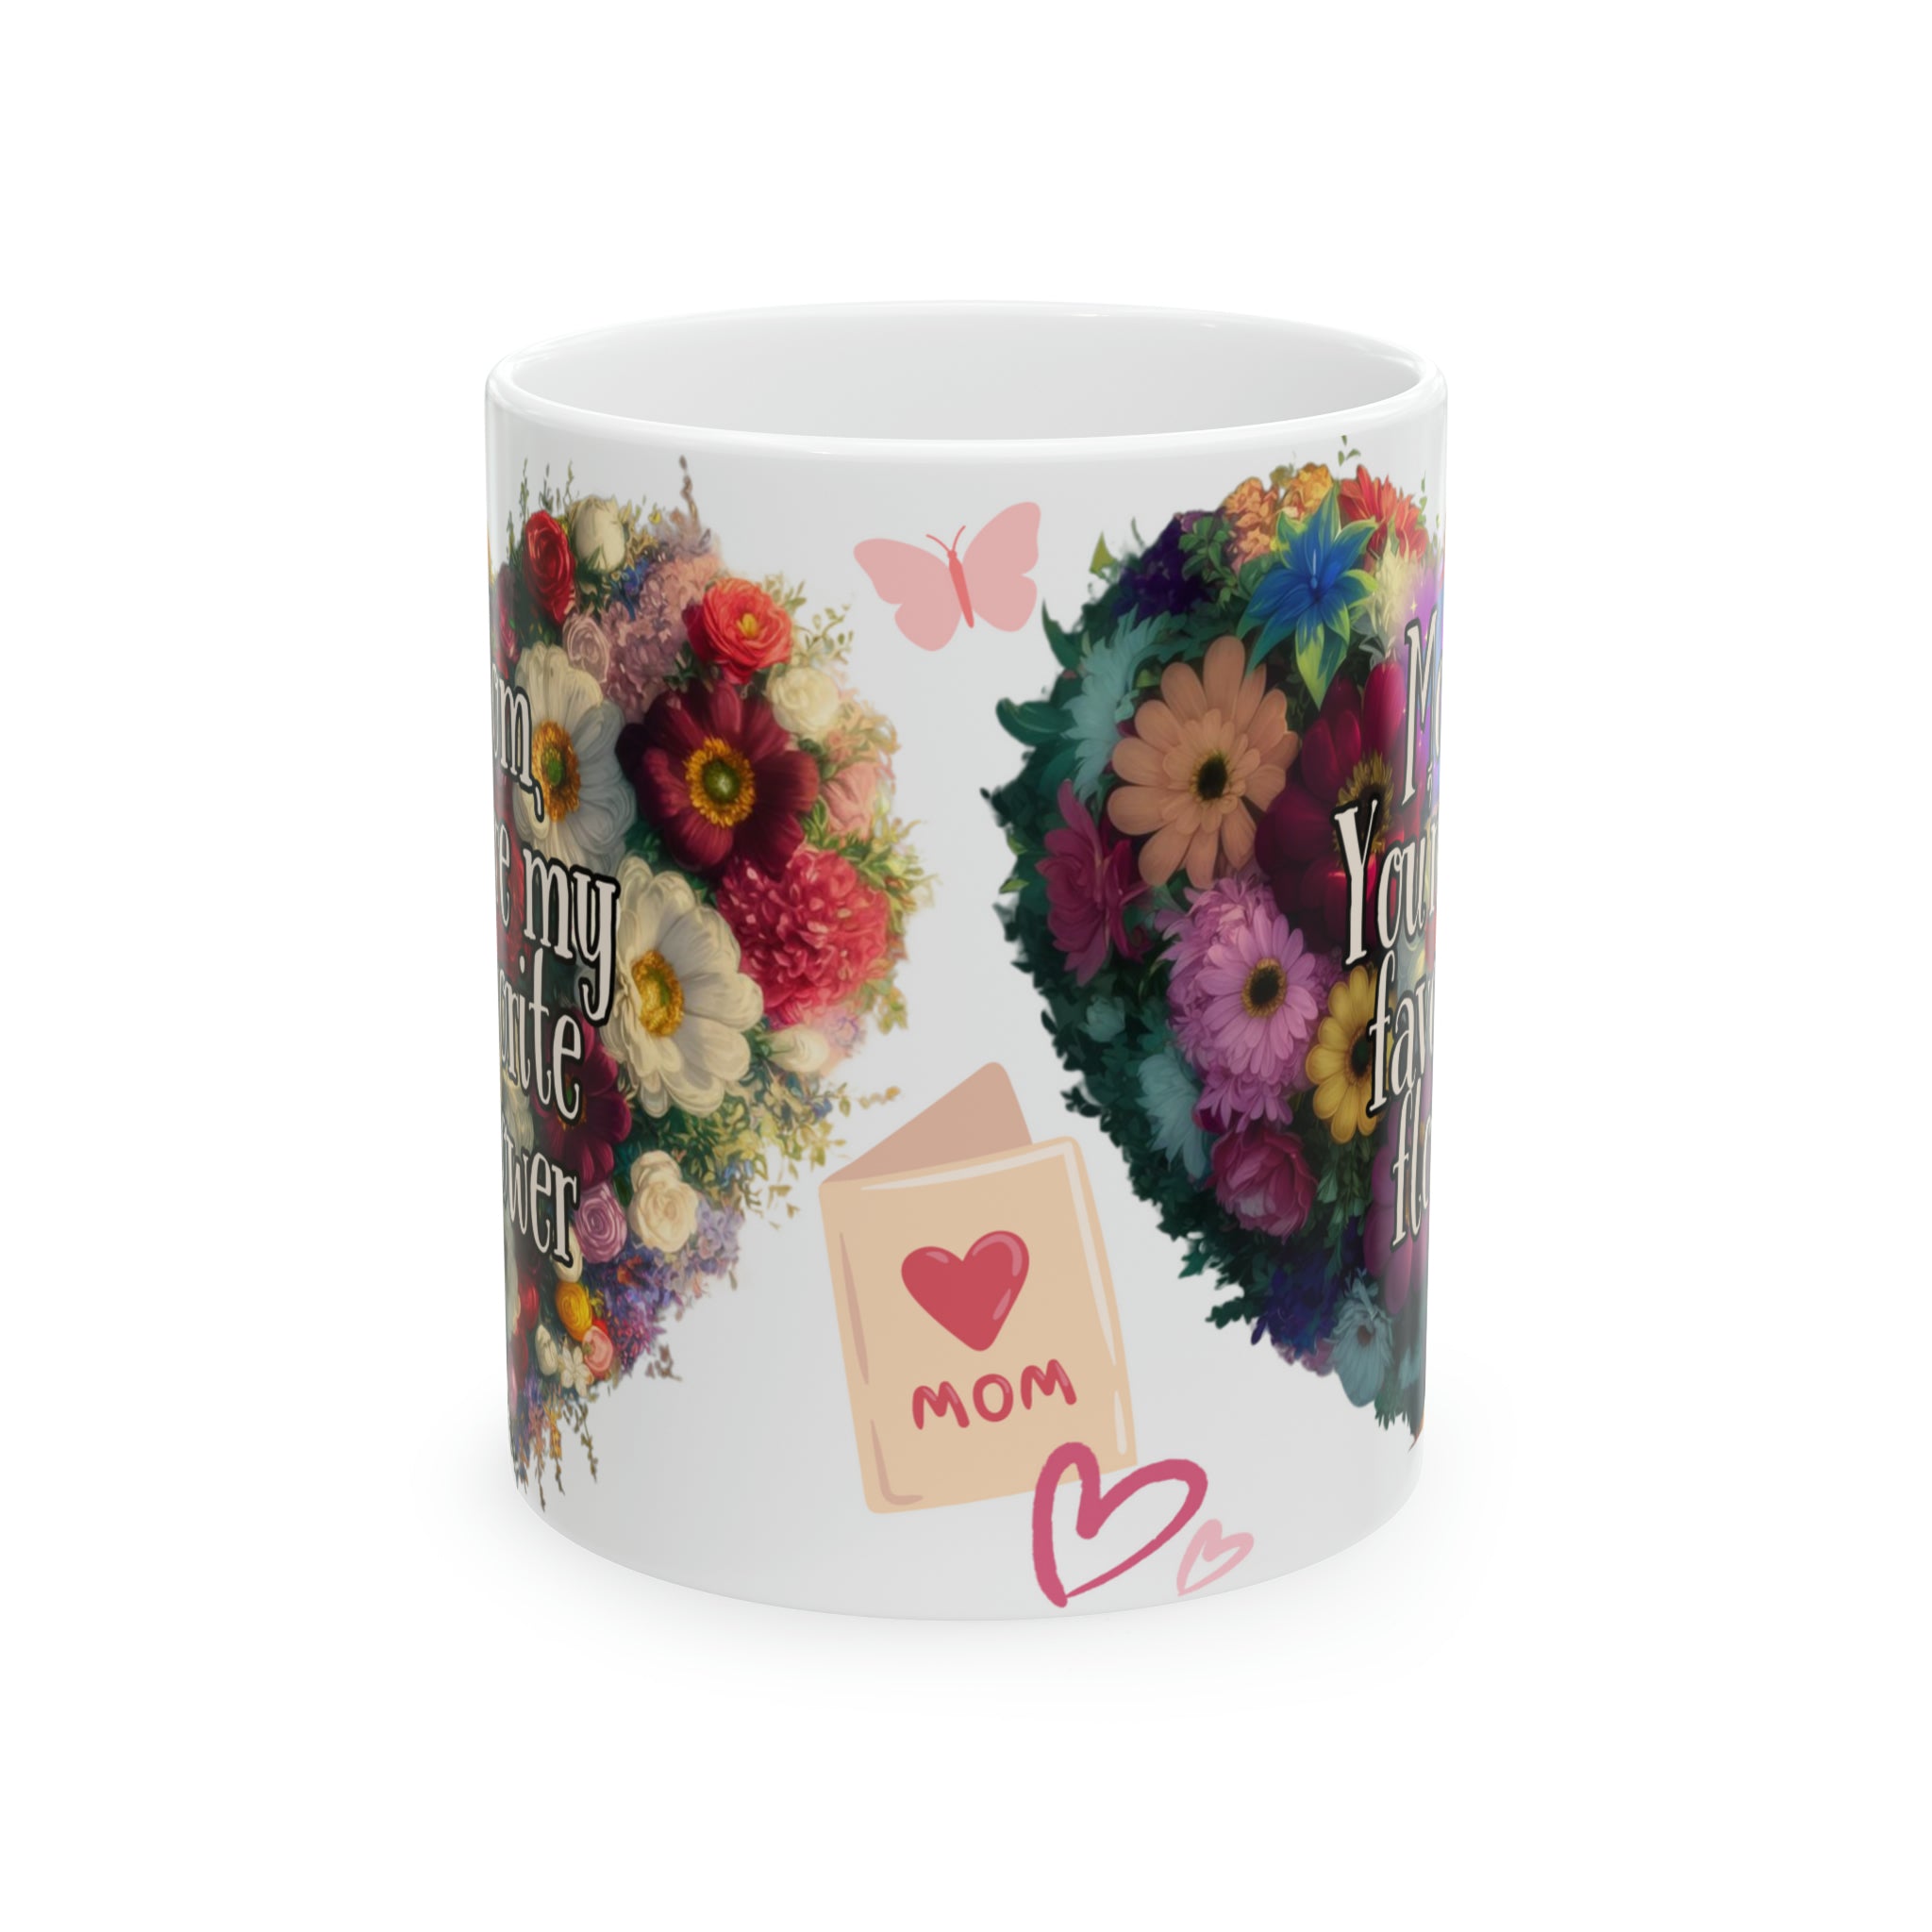 Mom, You're my favorite flower - Ceramic Mug, 11oz